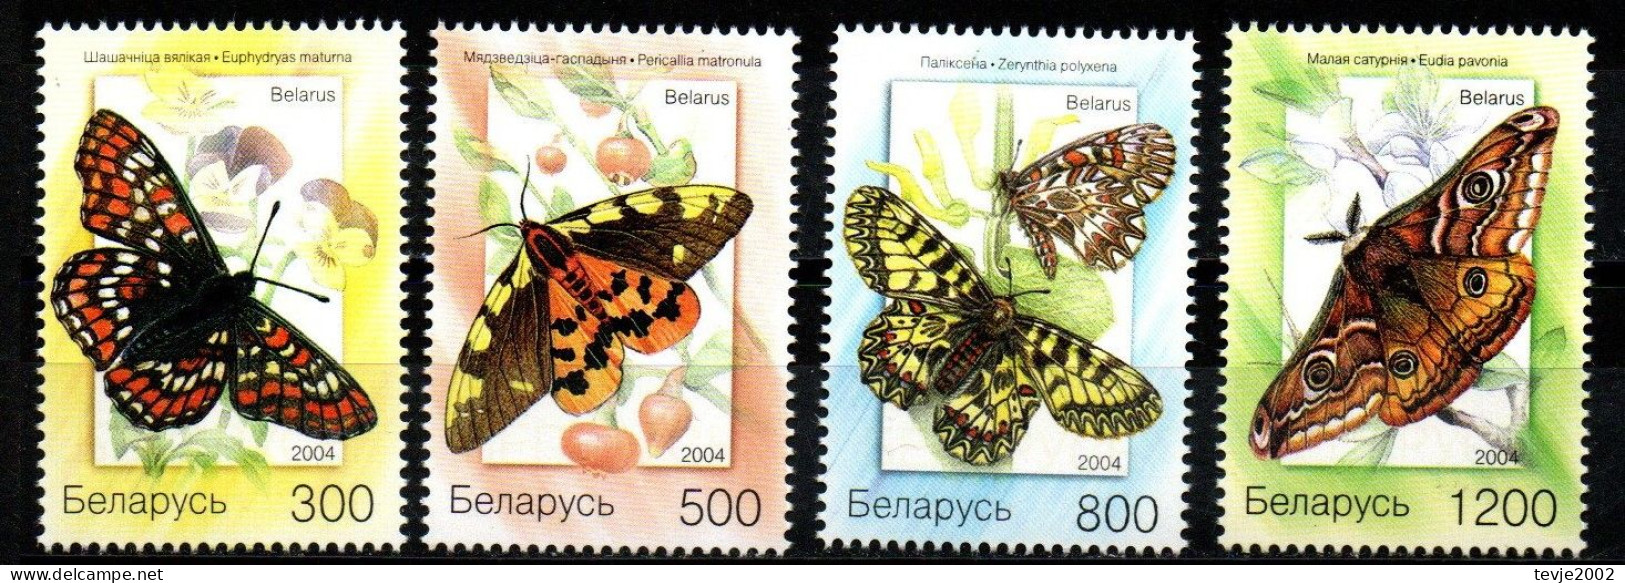 Weißrussland Belarus 2004 - Mi.Nr. 557 - 560 - Postfrisch MNH - Tiere Animals Schmetterlinge Butterflies - Mariposas